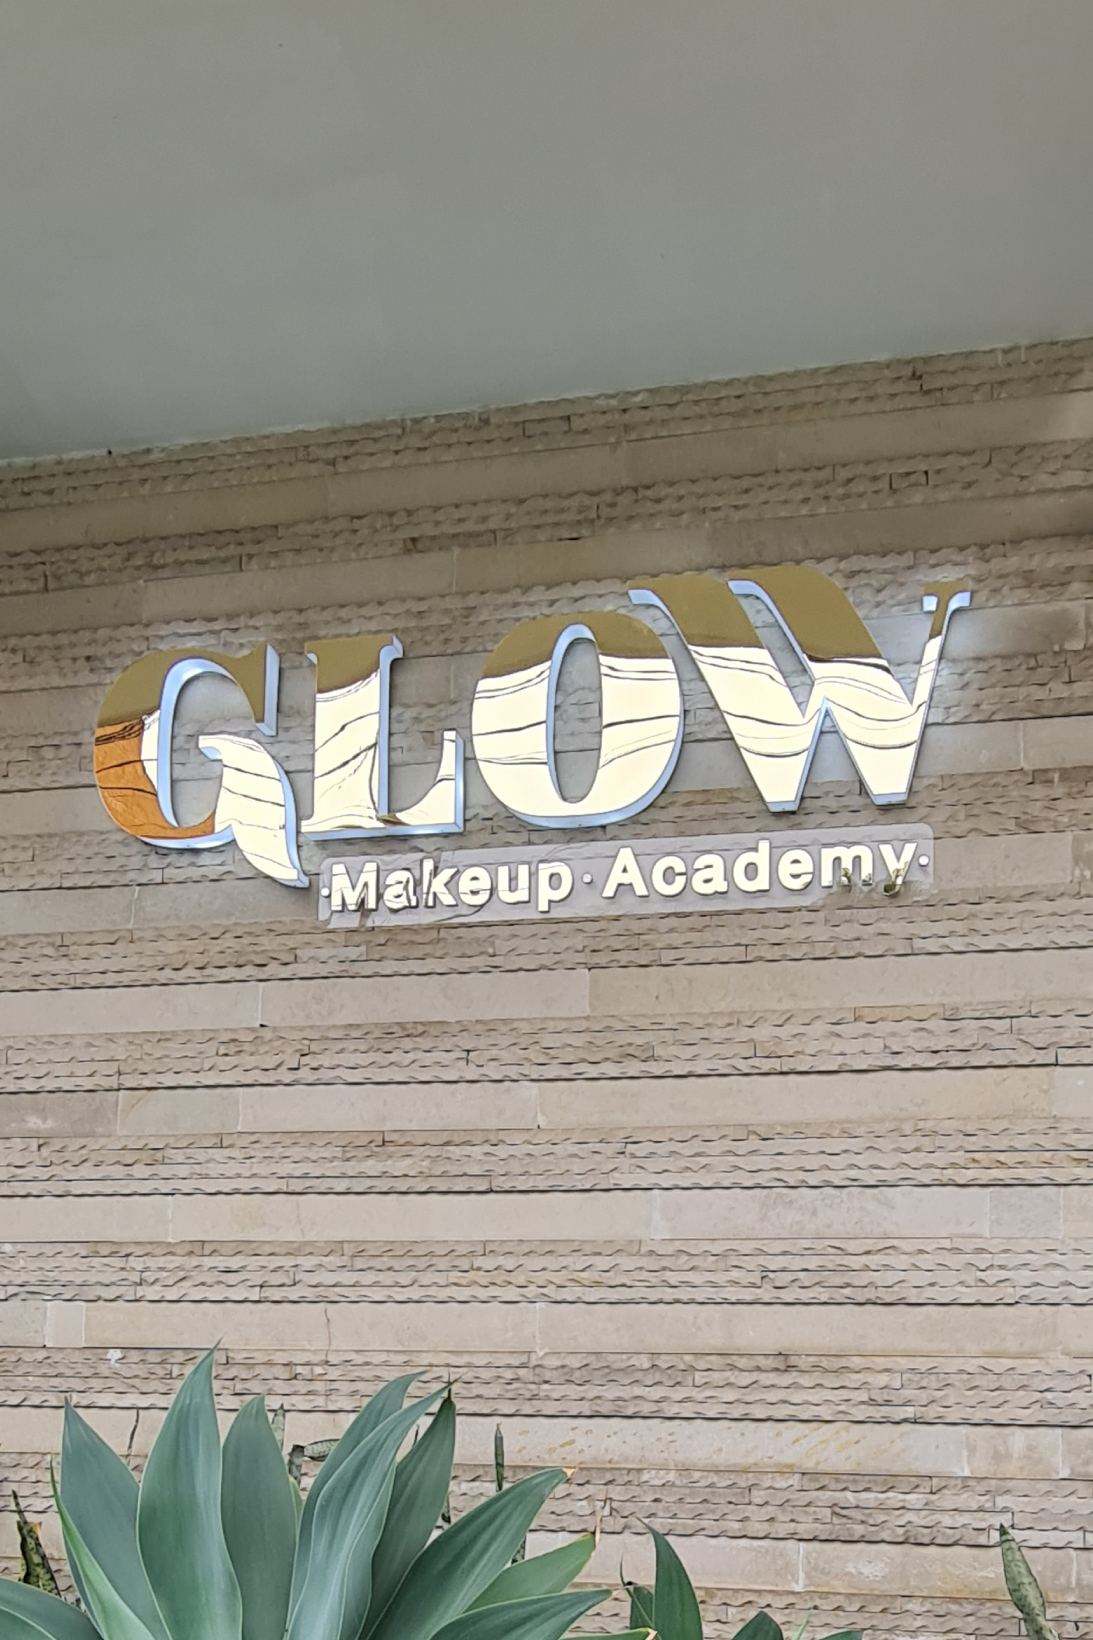 Glow-academia-2